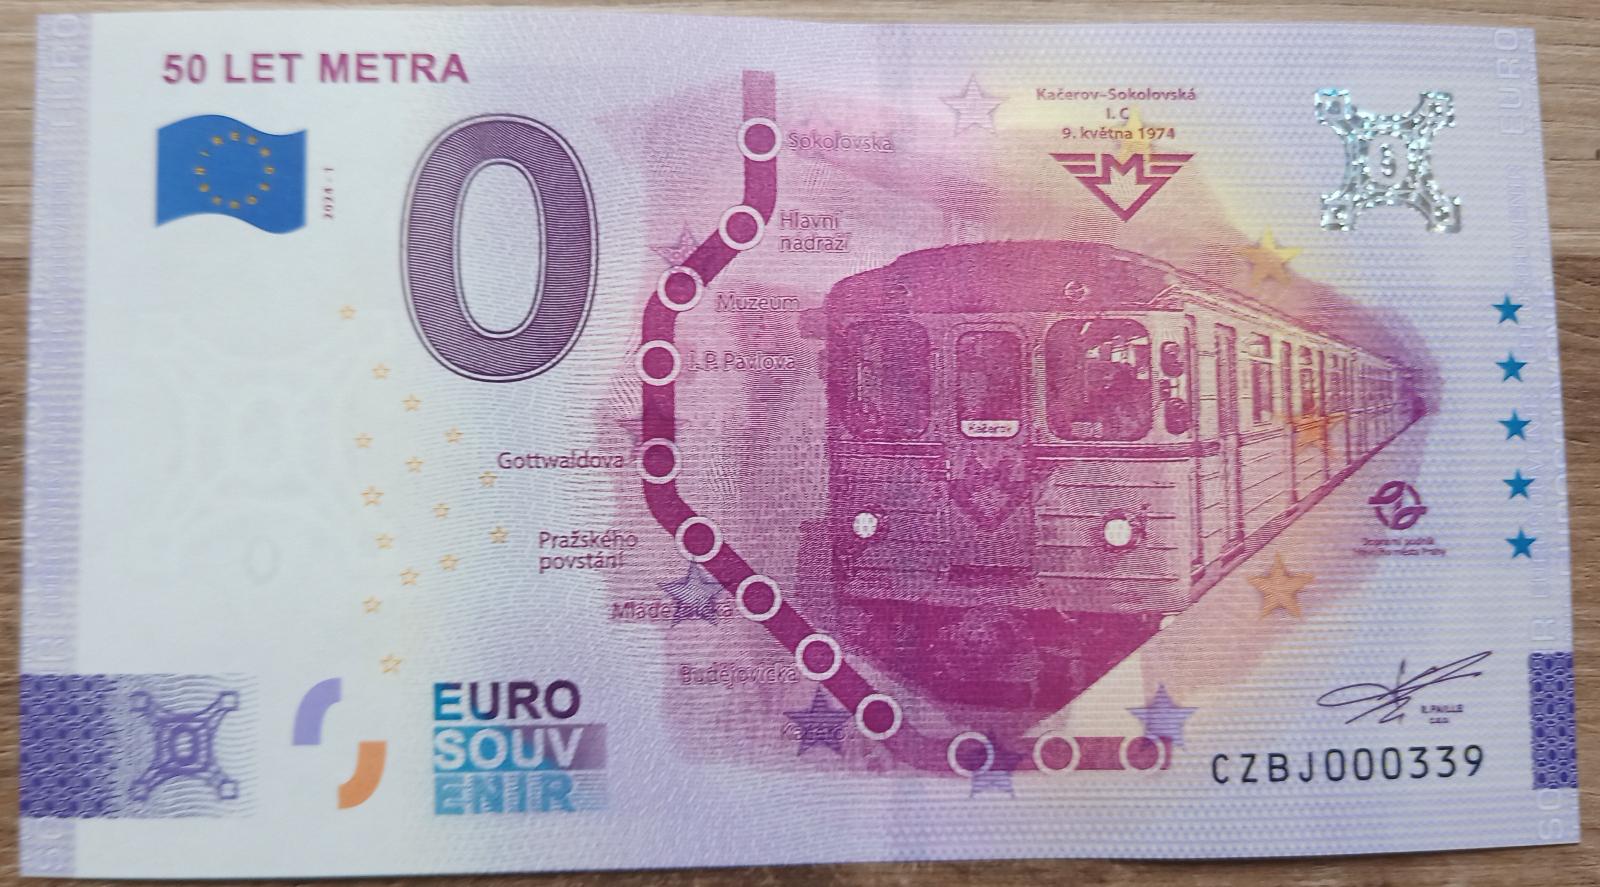 0 Euro Souvenir 50 rokov Metra - Zberateľstvo